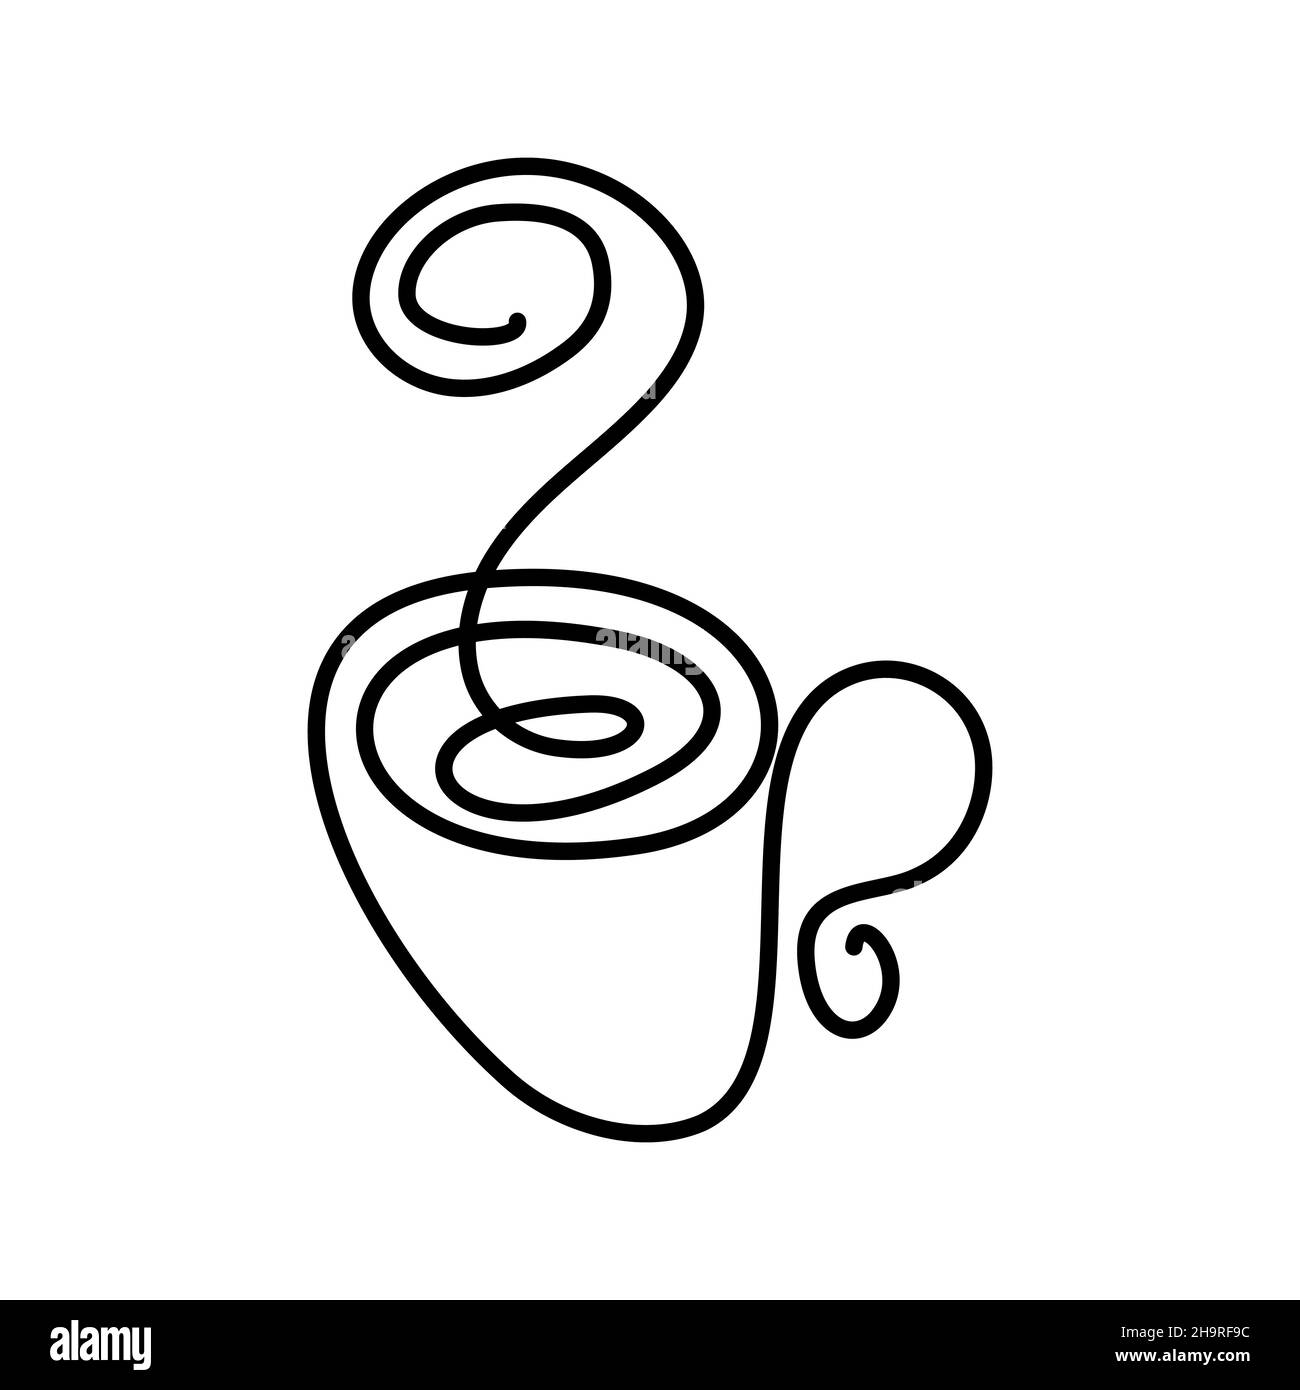 Dibujo de contorno de una taza minimalista con una línea continua. Dibujado  a mano. La imagen del diseño en la tela y servilleta del menú de la  cafetería y del restaurante. Gráficos